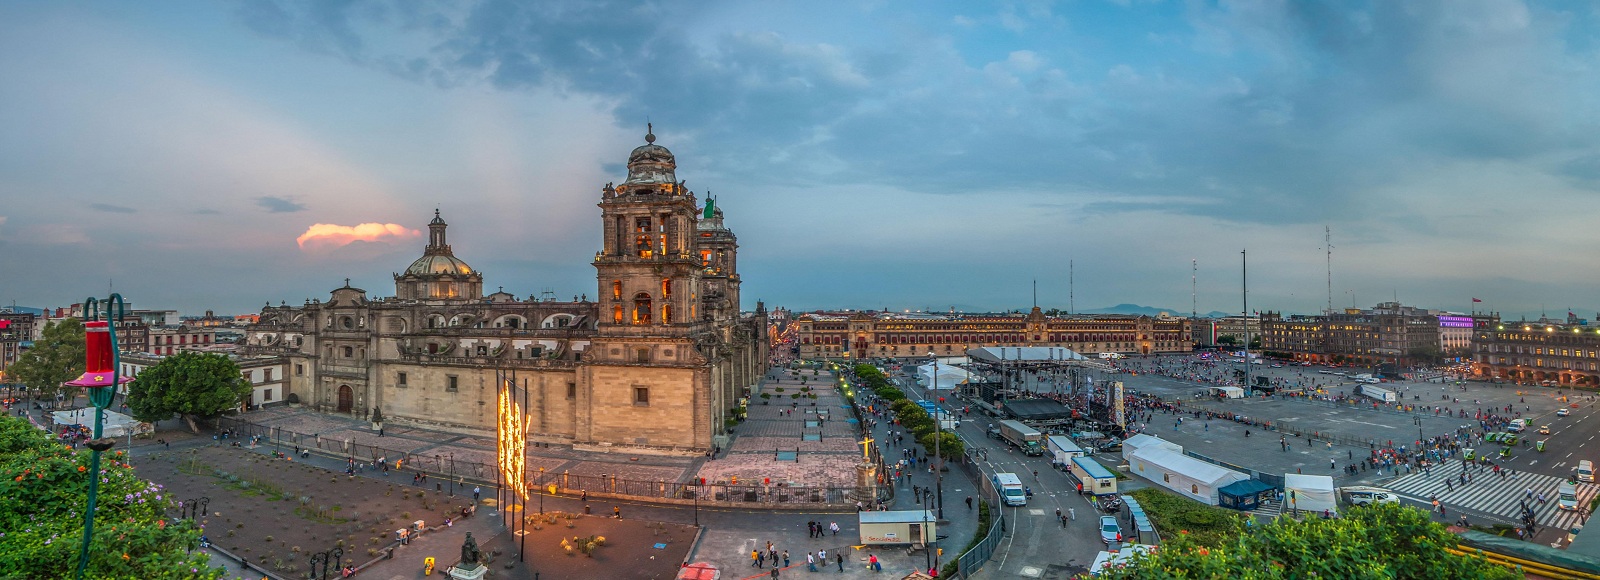 Ofertas de Traslados en Ciudad de Mexico. Traslados económicos en Ciudad de Mexico 